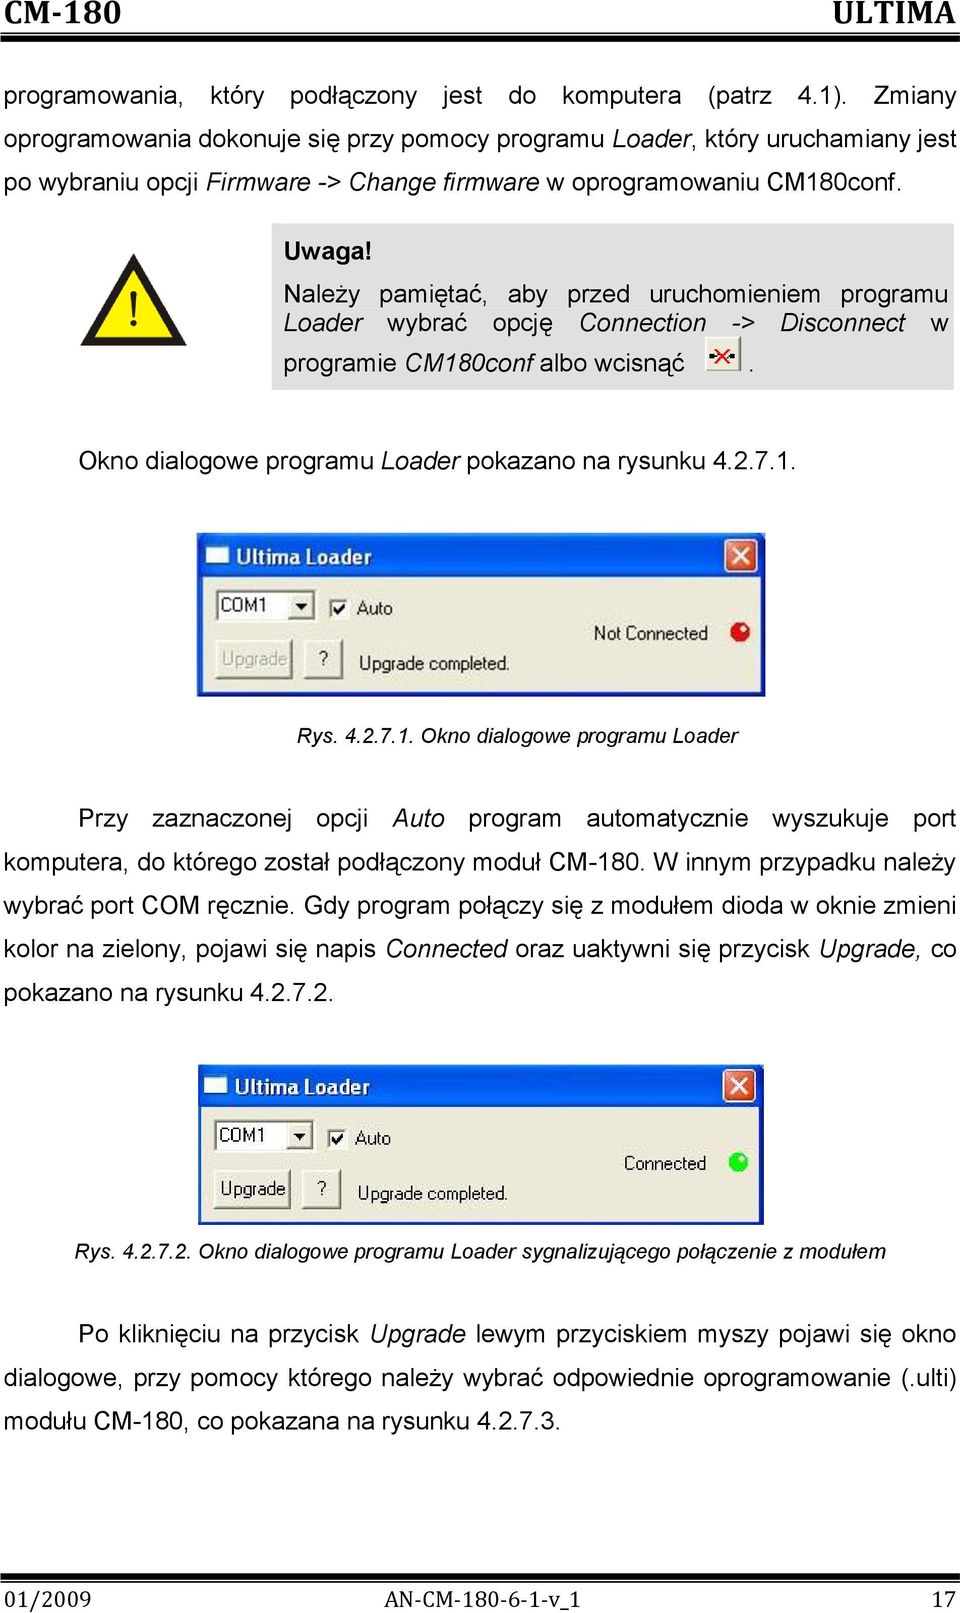 Należy pamiętać, aby przed uruchomieniem programu Loader wybrać opcję Connection -> Disconnect w programie CM18